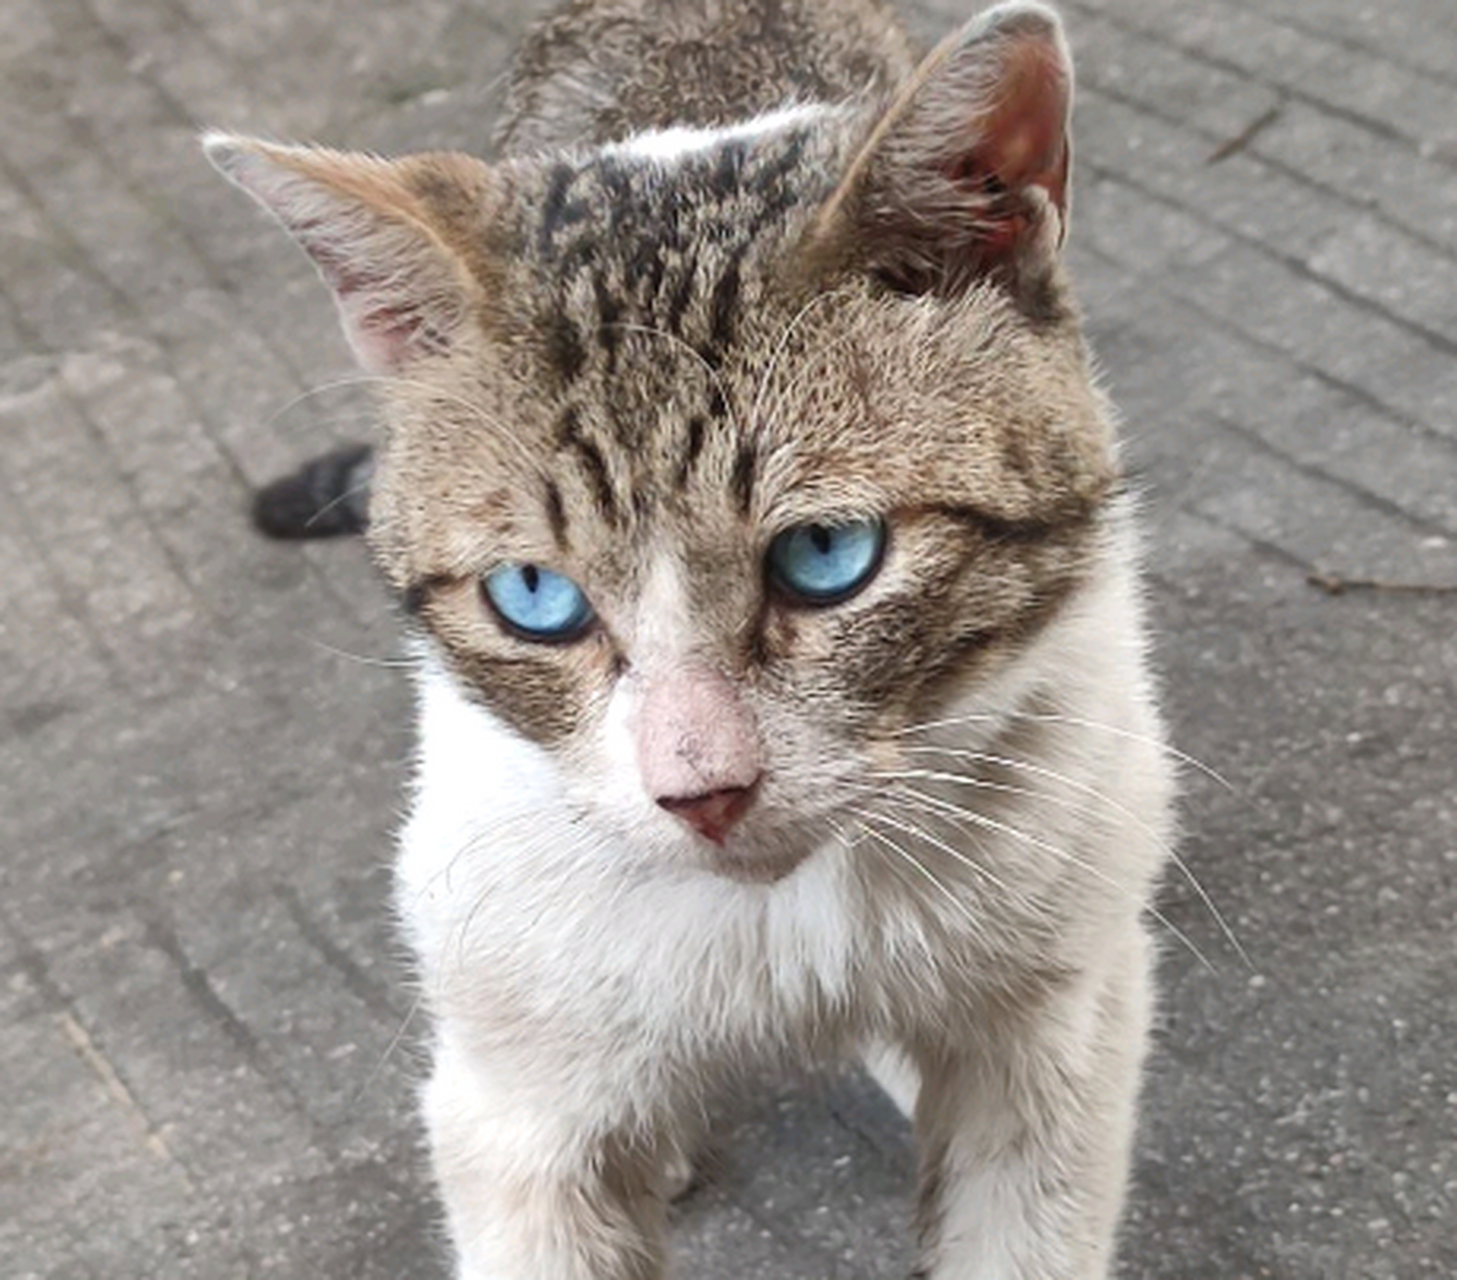 第一次看到狸花猫居然有蓝眼睛啊?